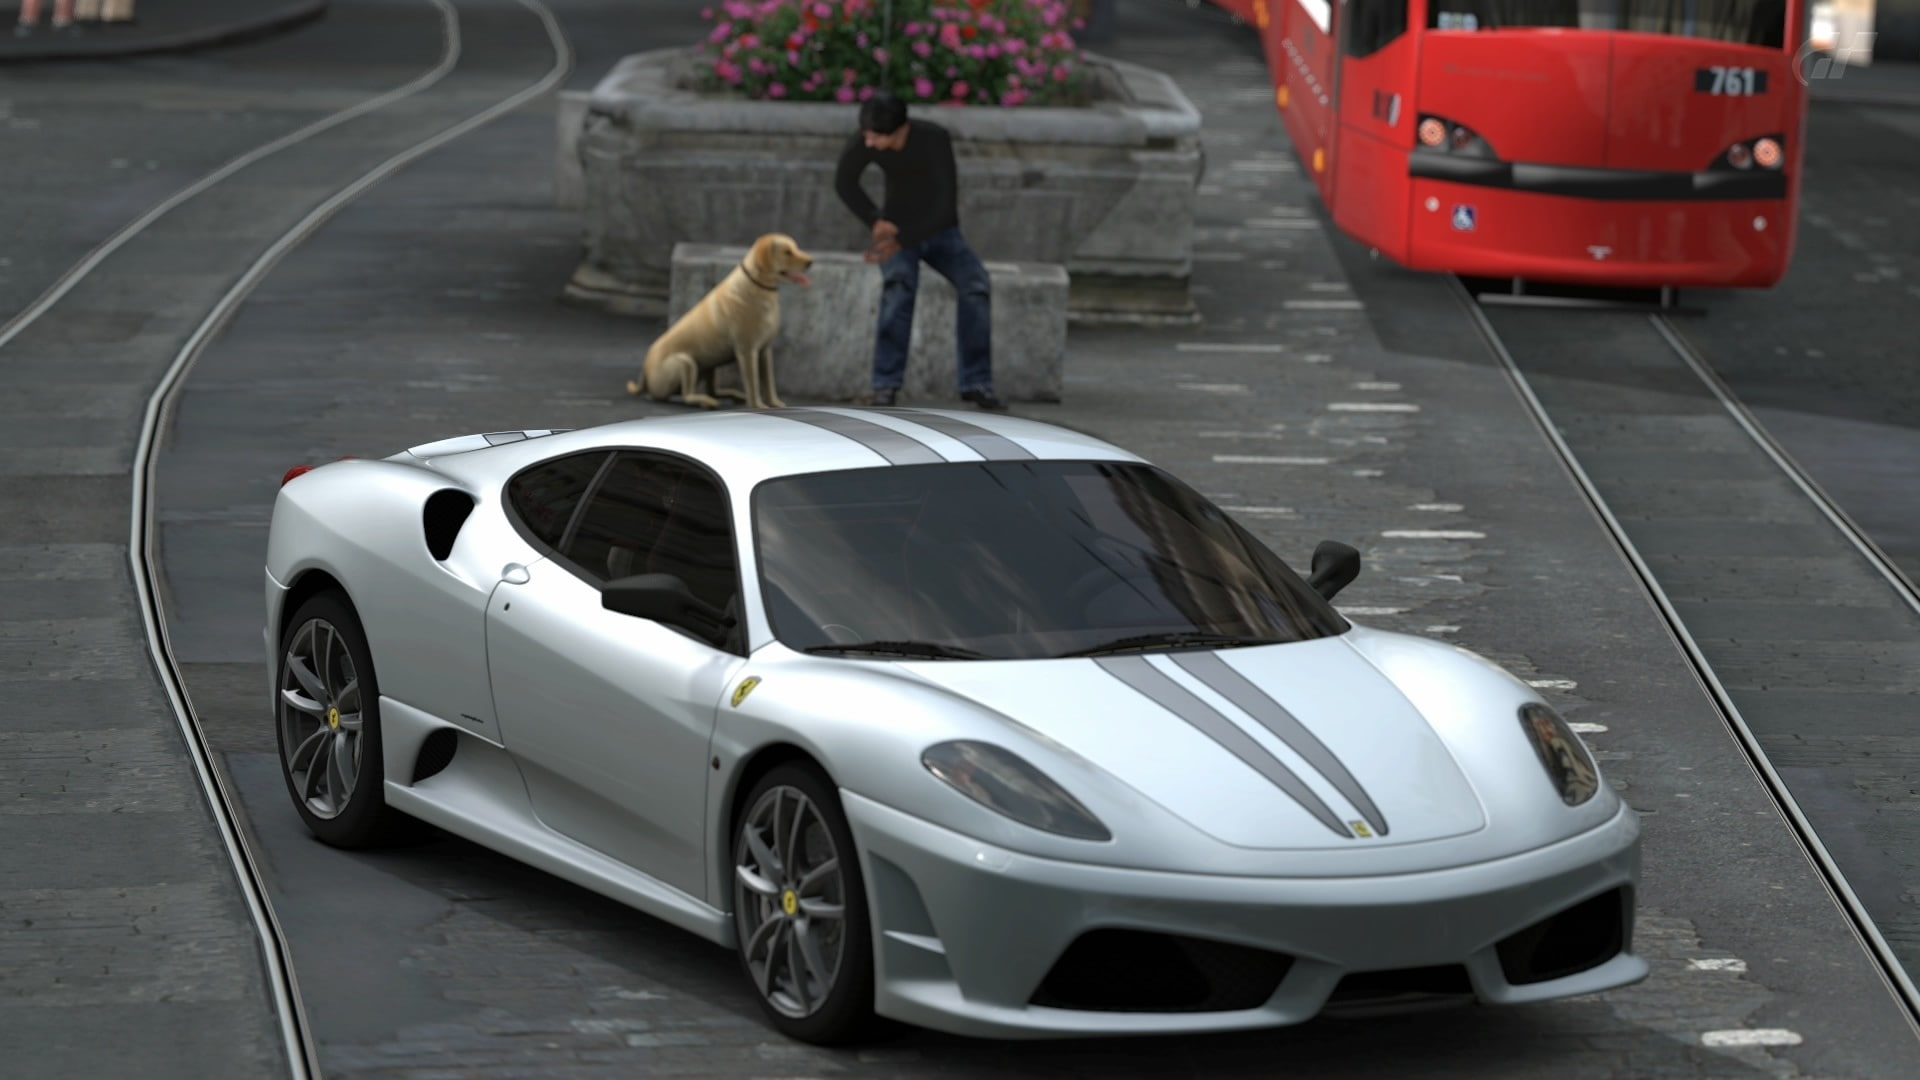 Ferrari F430, Gran Turismo 5, Siemens Combino, car